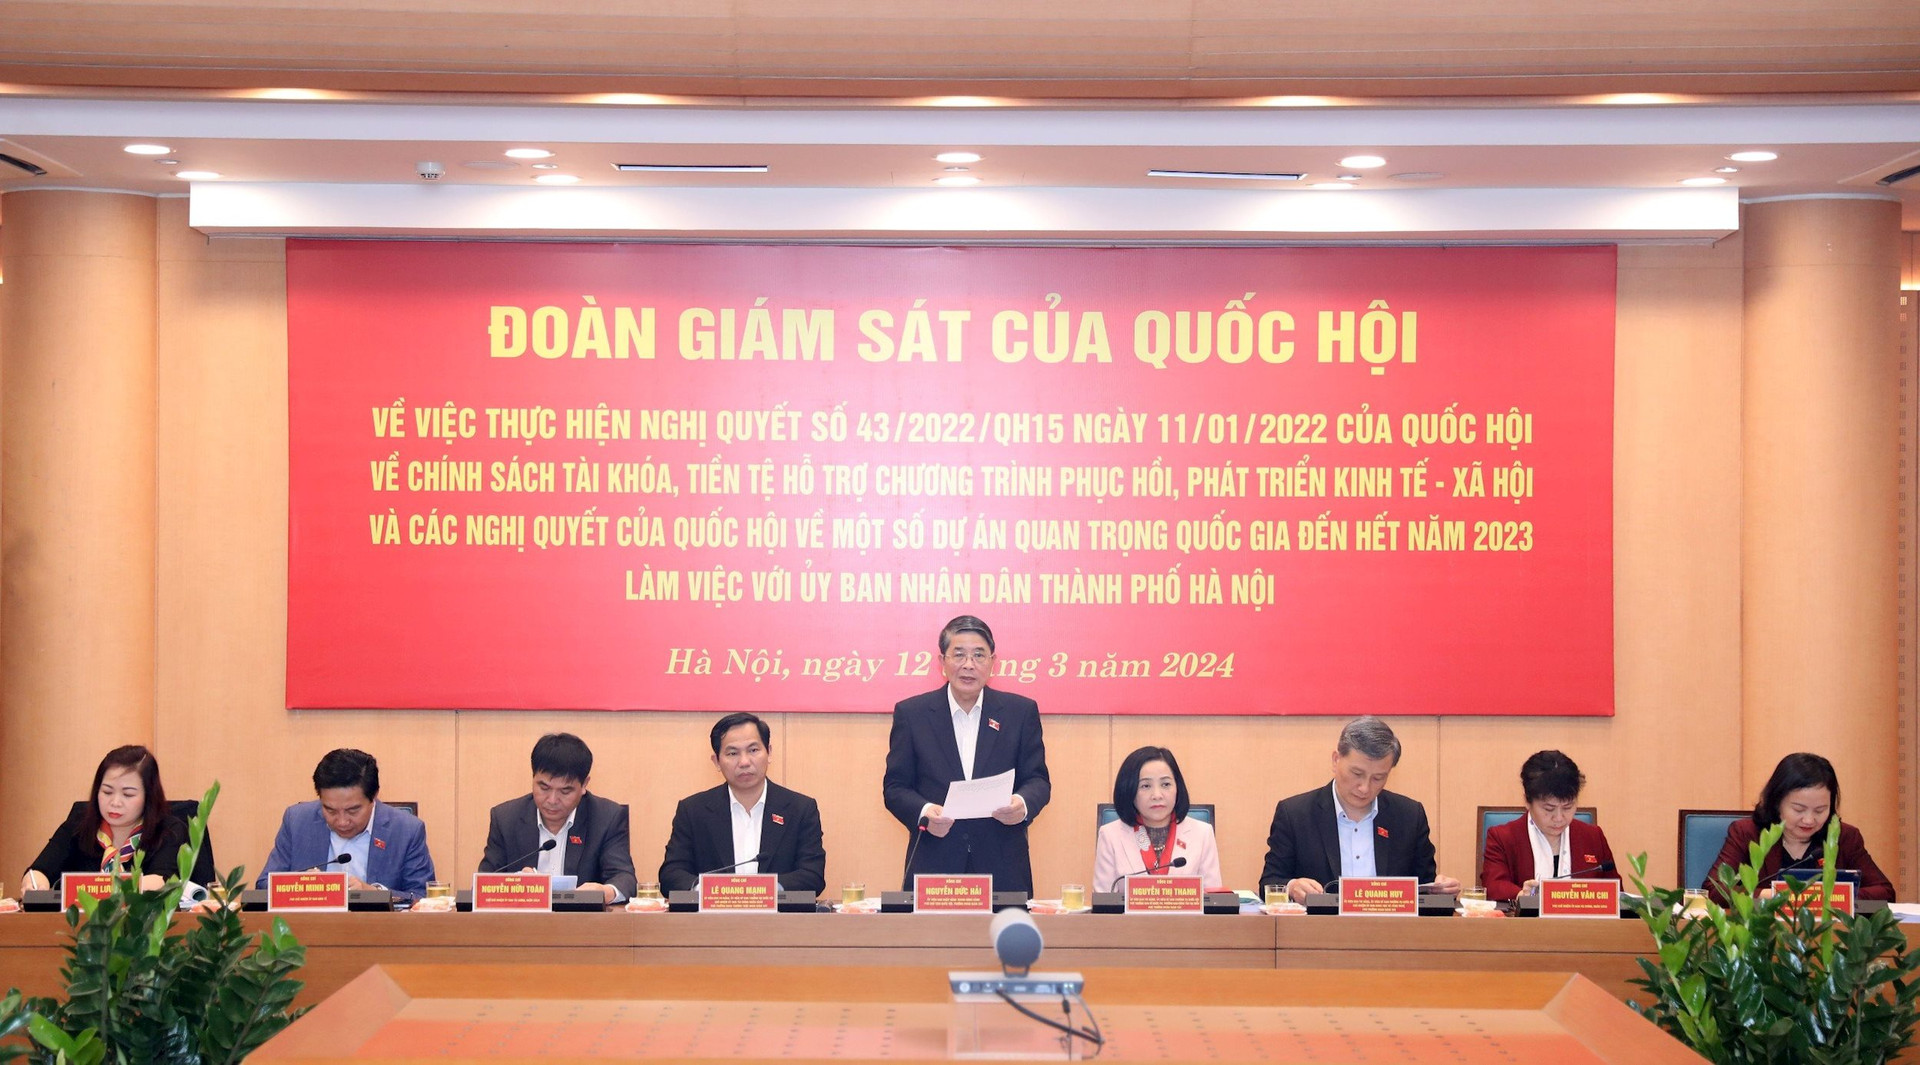 Phó Chủ tịch Quốc hội Nguyễn Đức Hải chủ trì buổi giám sát.